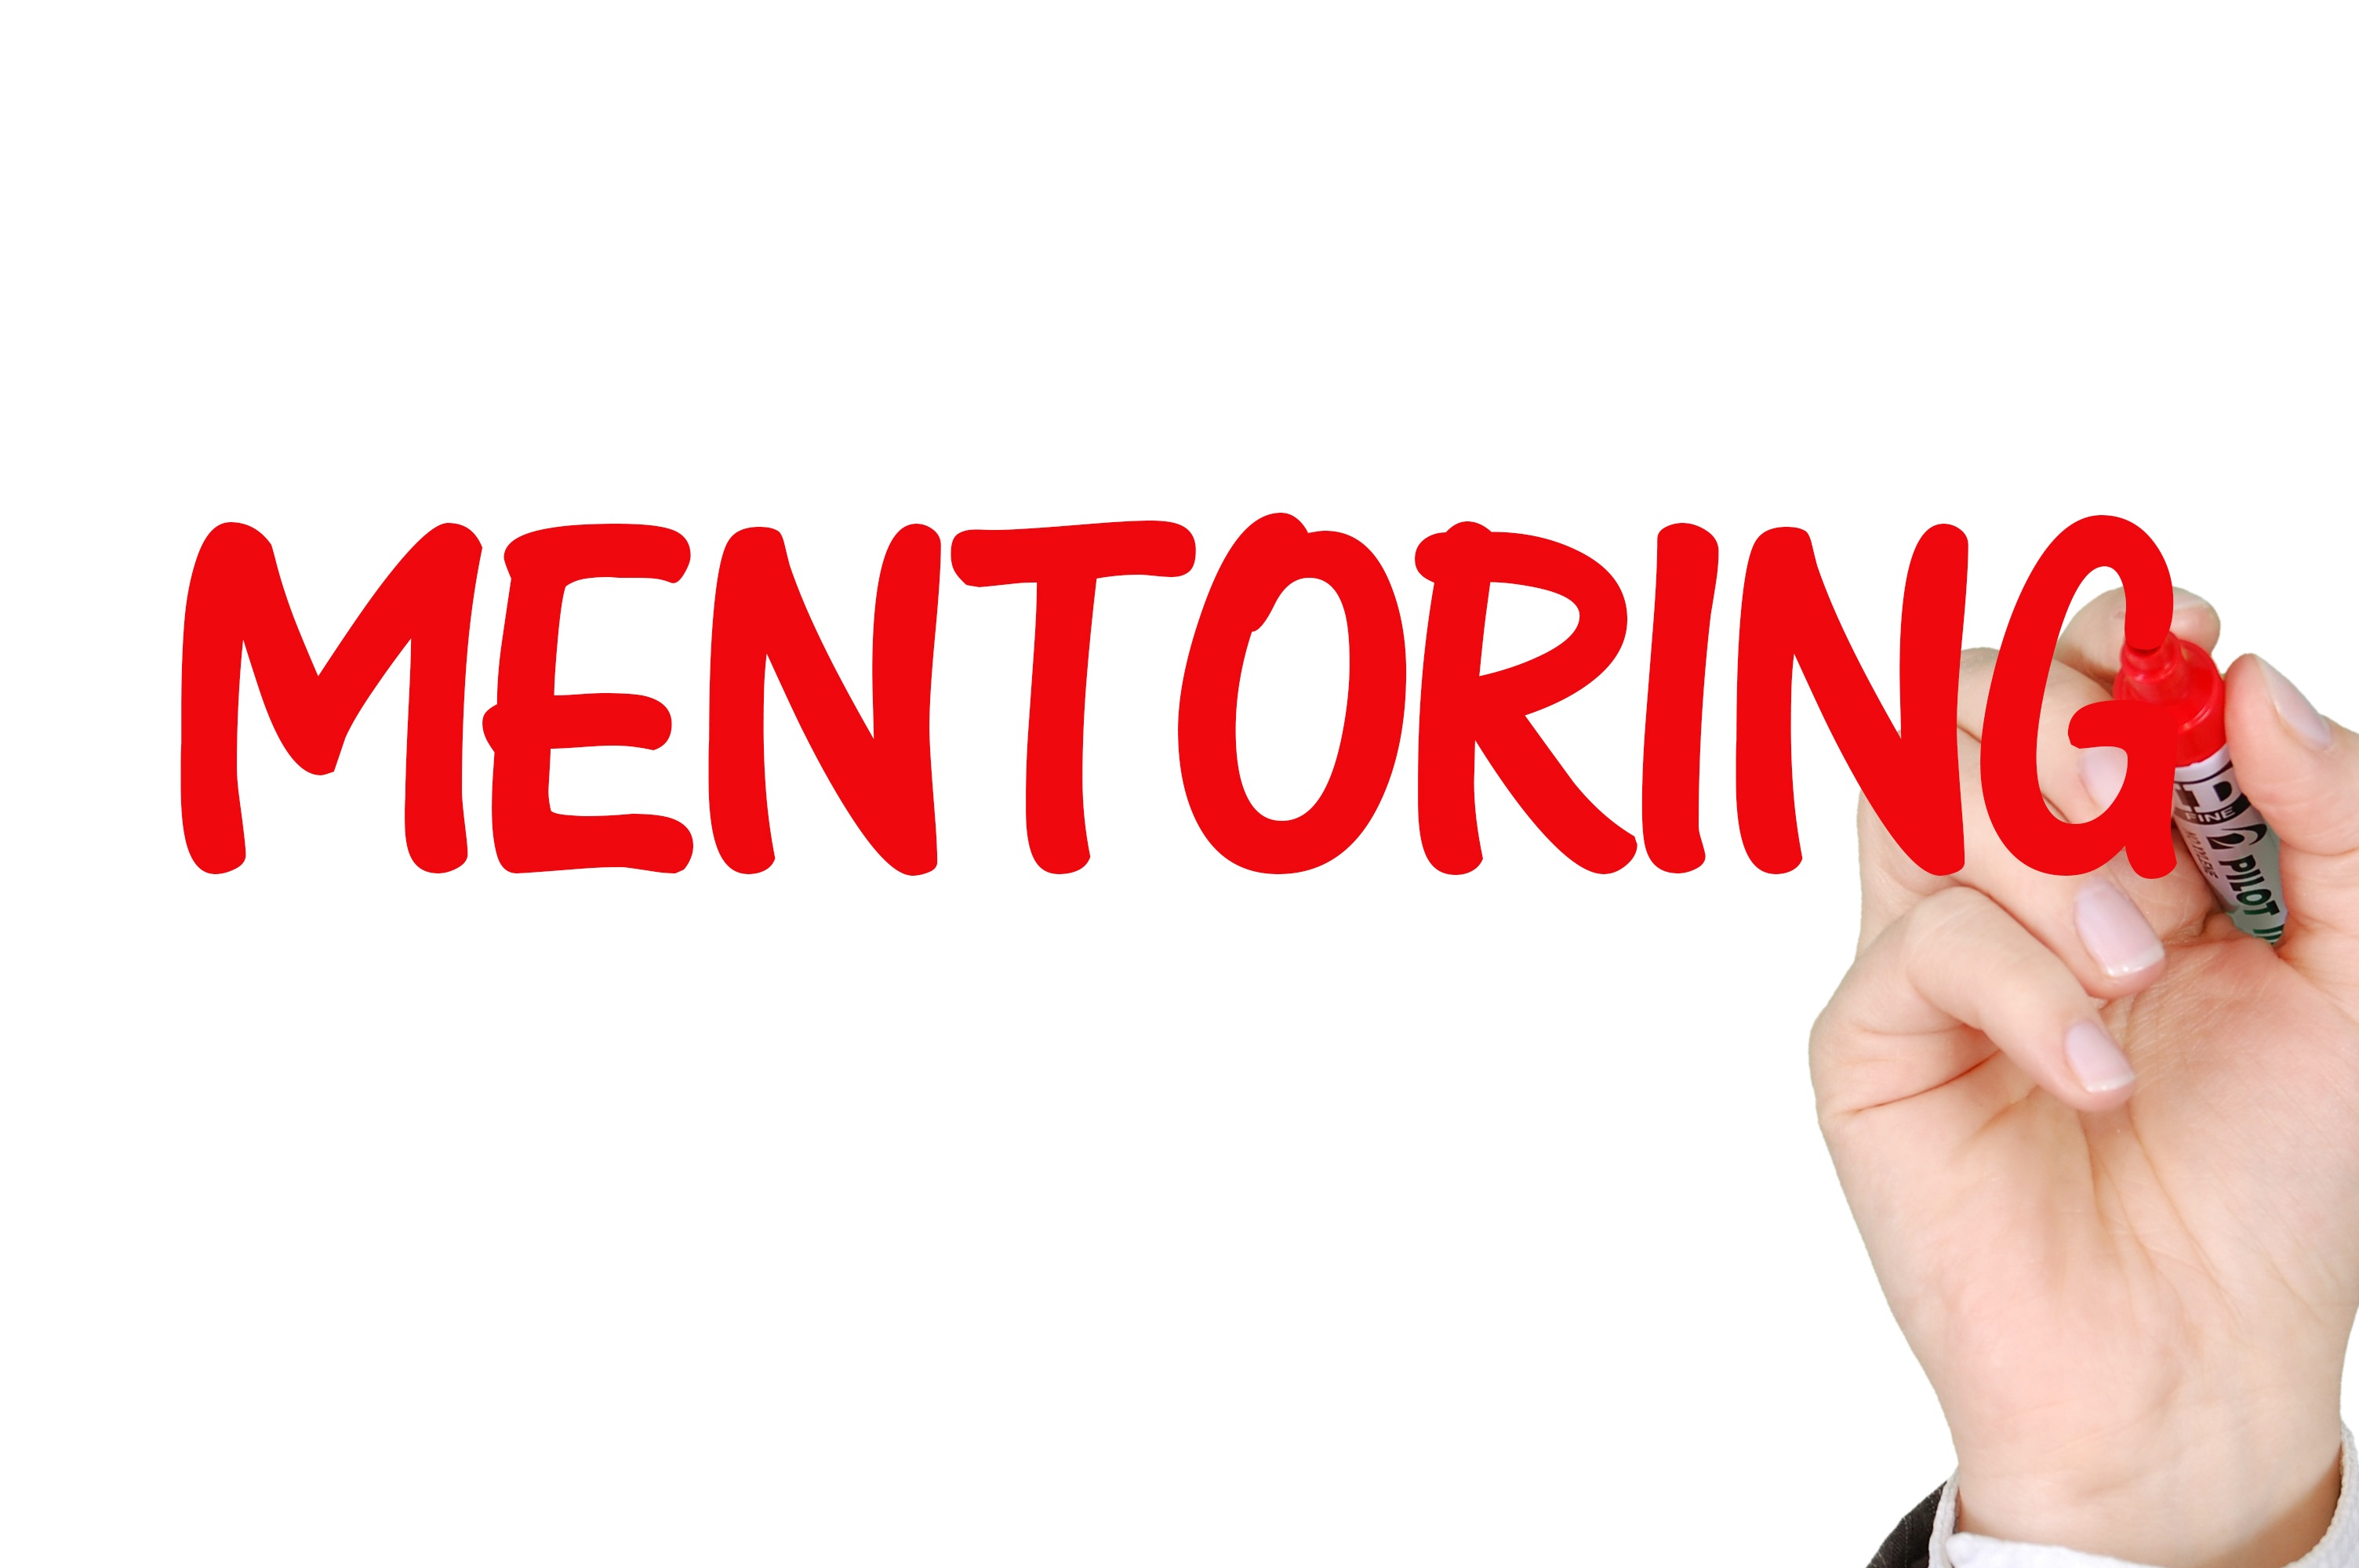 mentoring-2738524